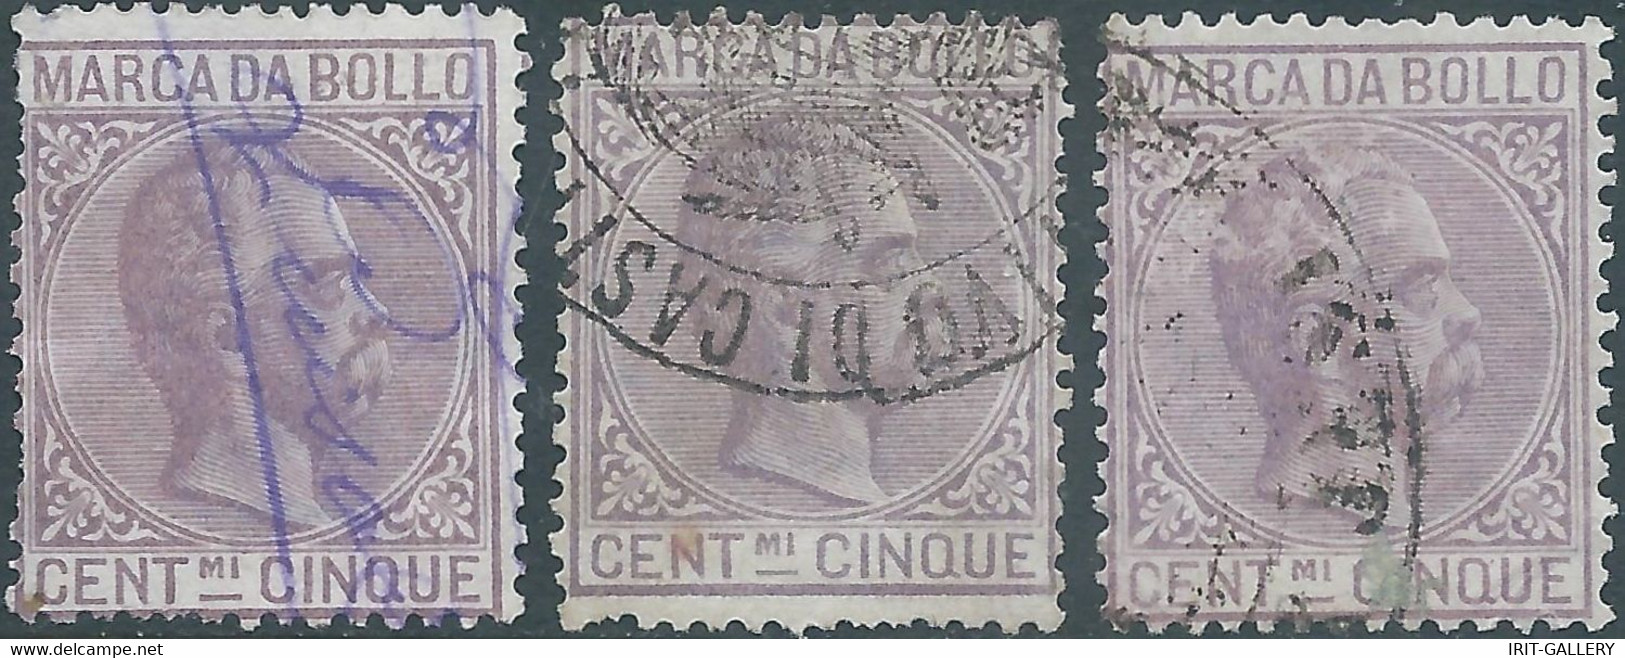 ITALIA-ITALY-ITALIEN,1882 Marca Da Bollo,Revenue Fiscal -Tax,3x 5Cent,Used - Revenue Stamps